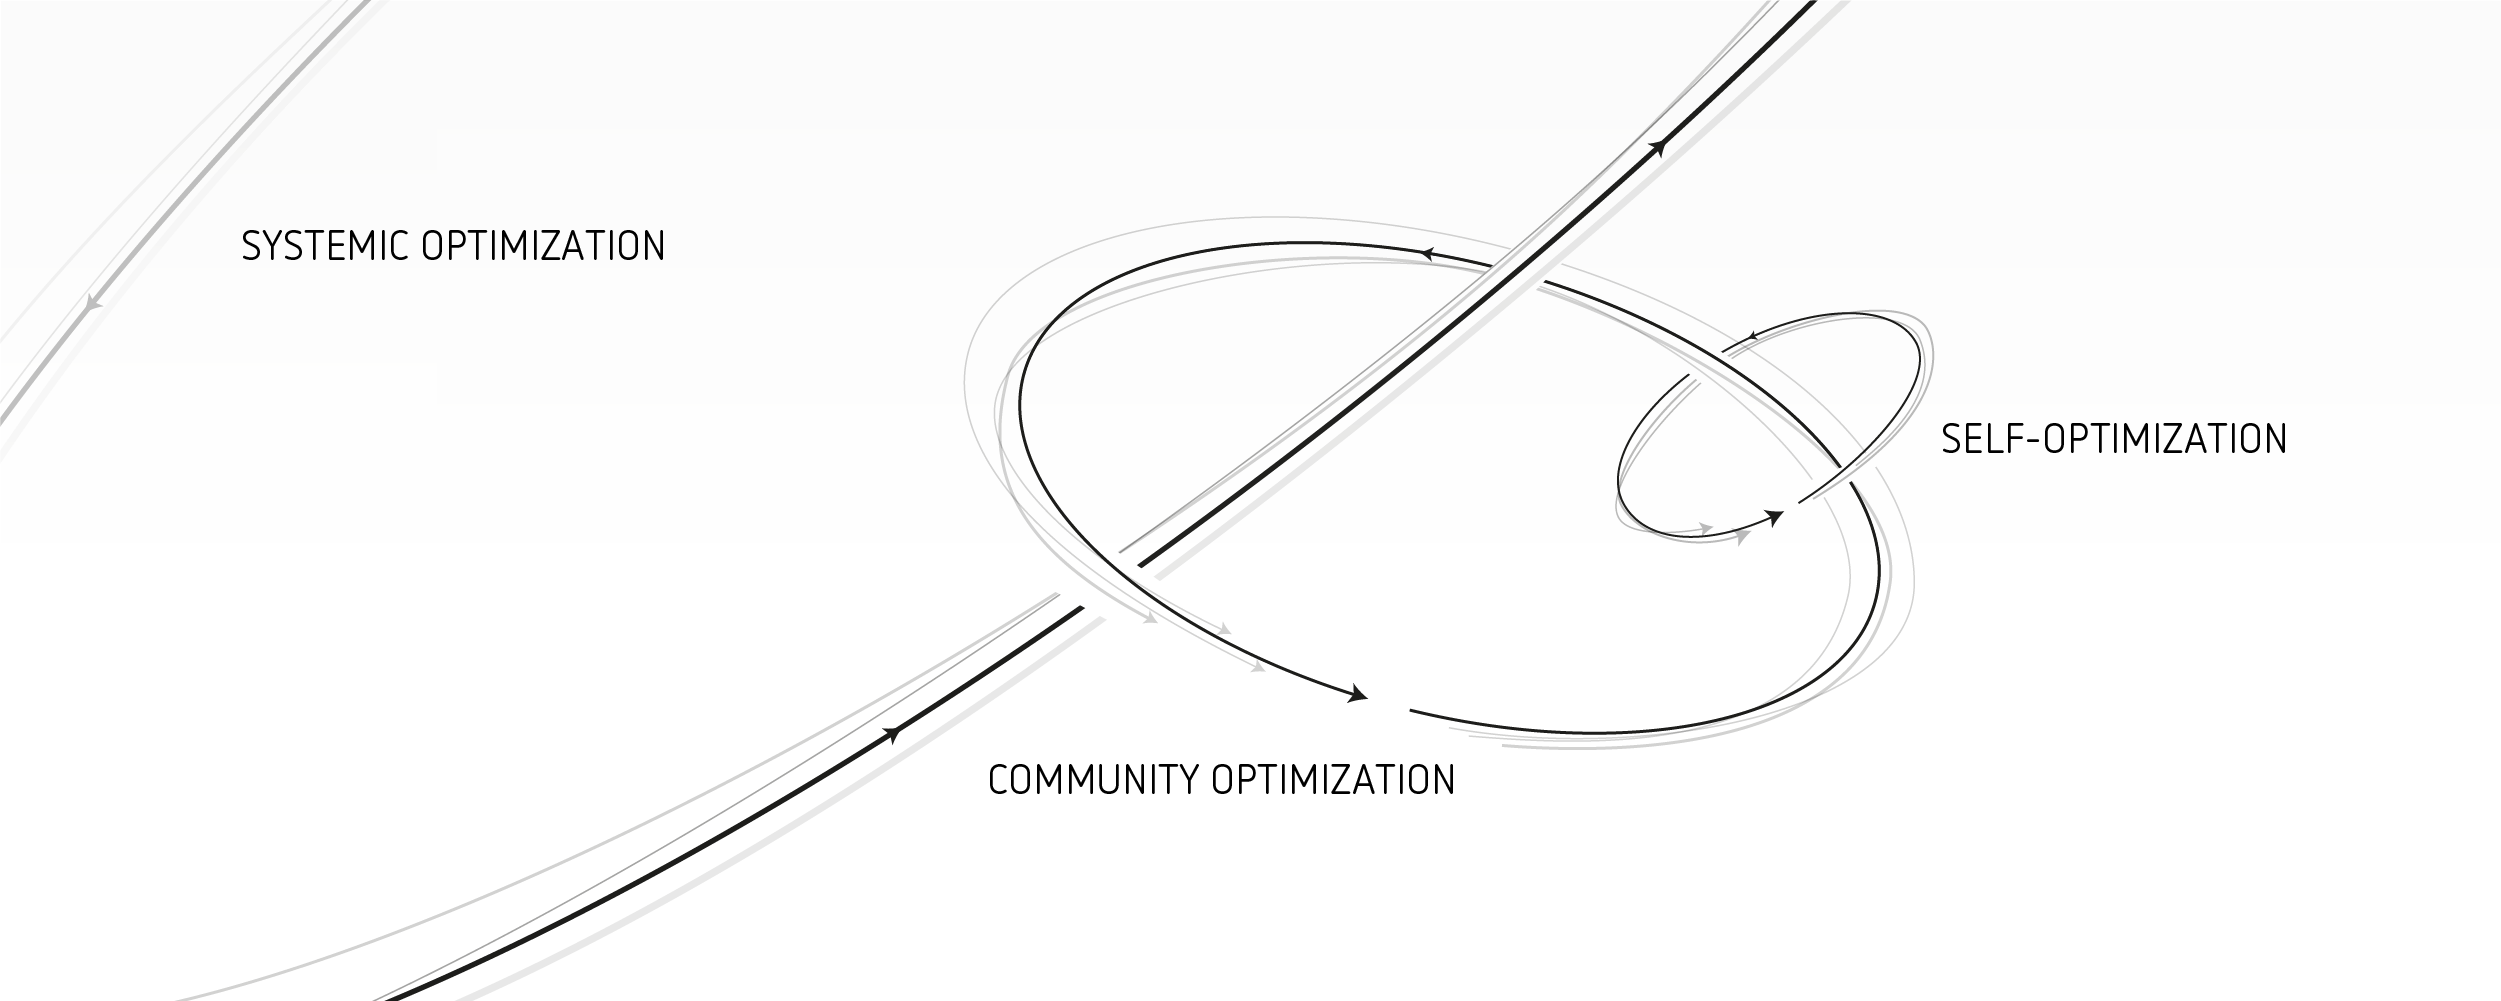 System optimization, community optimization, self-optimization